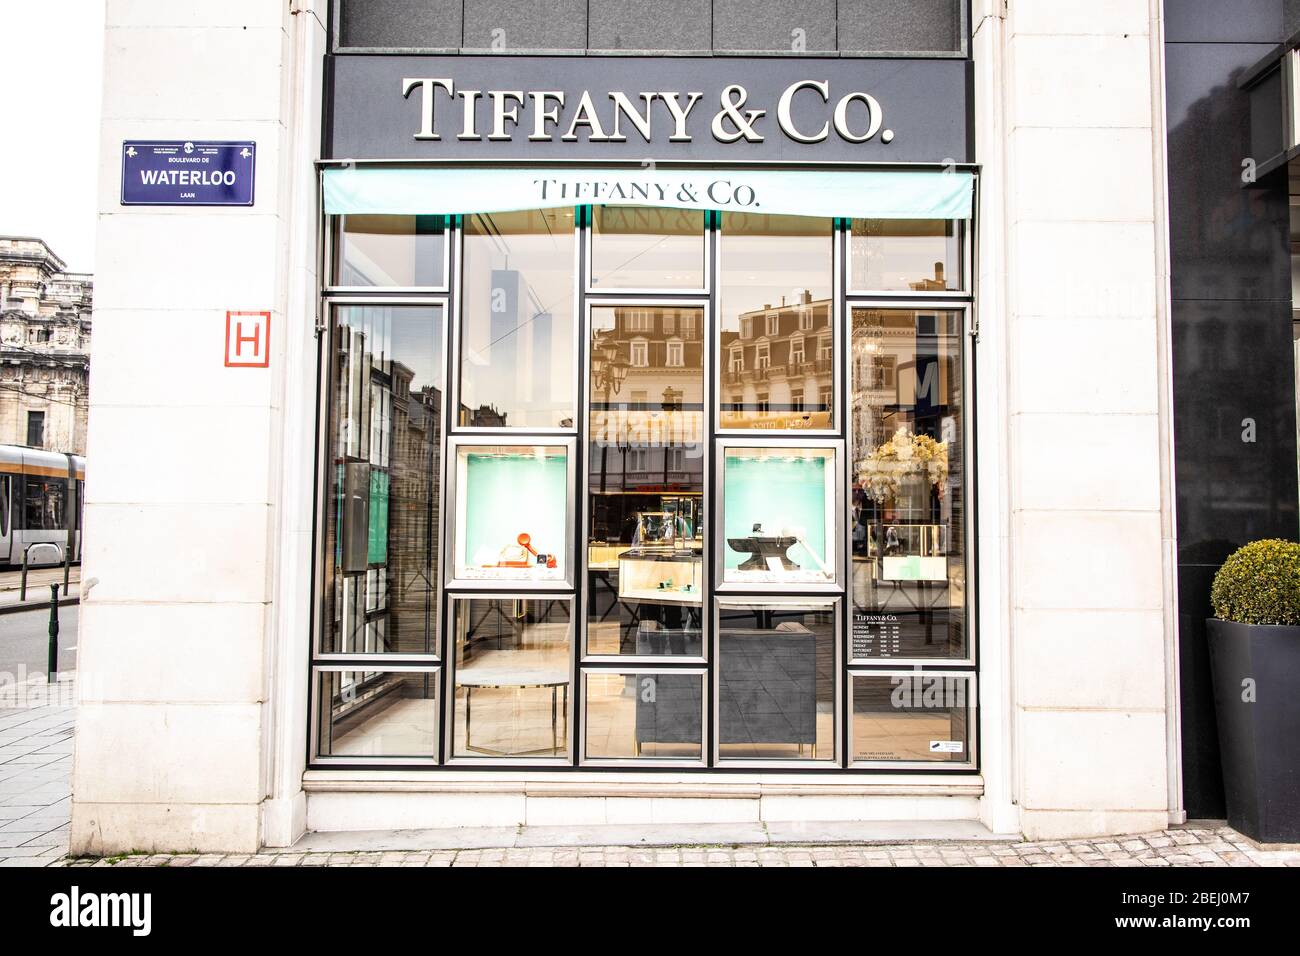 Bruselas, Bélgica, 2020 de enero: Tienda de joyas Tiffany, escaparates, exposición con joyas de diamantes, anillos, collares, pendientes de Tiffany & Co Foto de stock